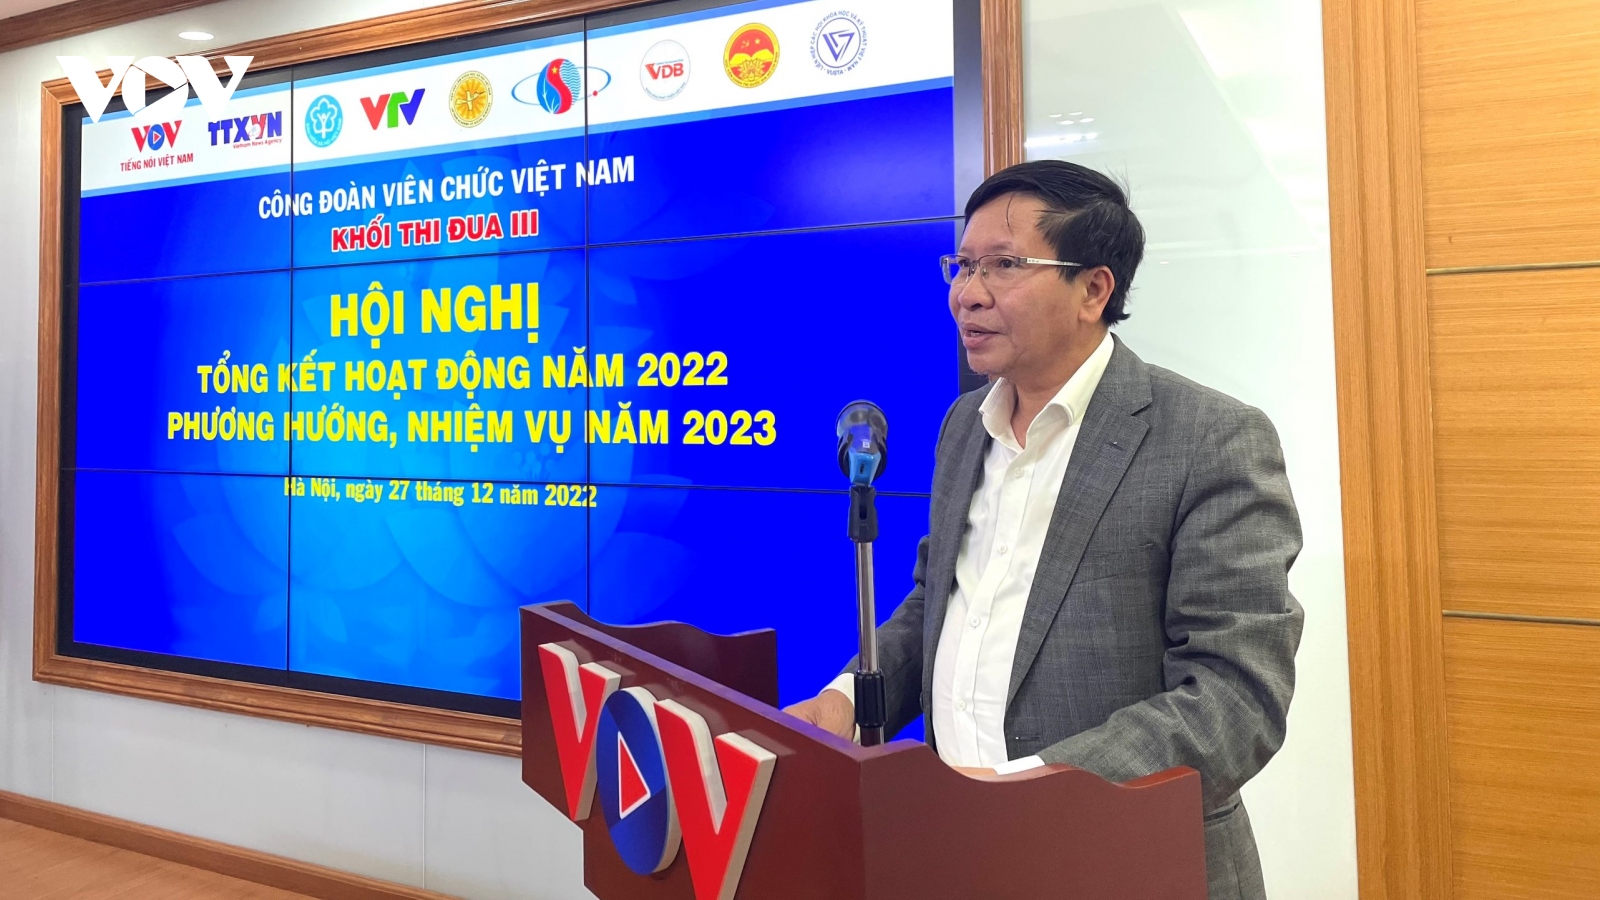 Khối thi đua III Công đoàn Viên chức Việt Nam tổng kết năm 2022